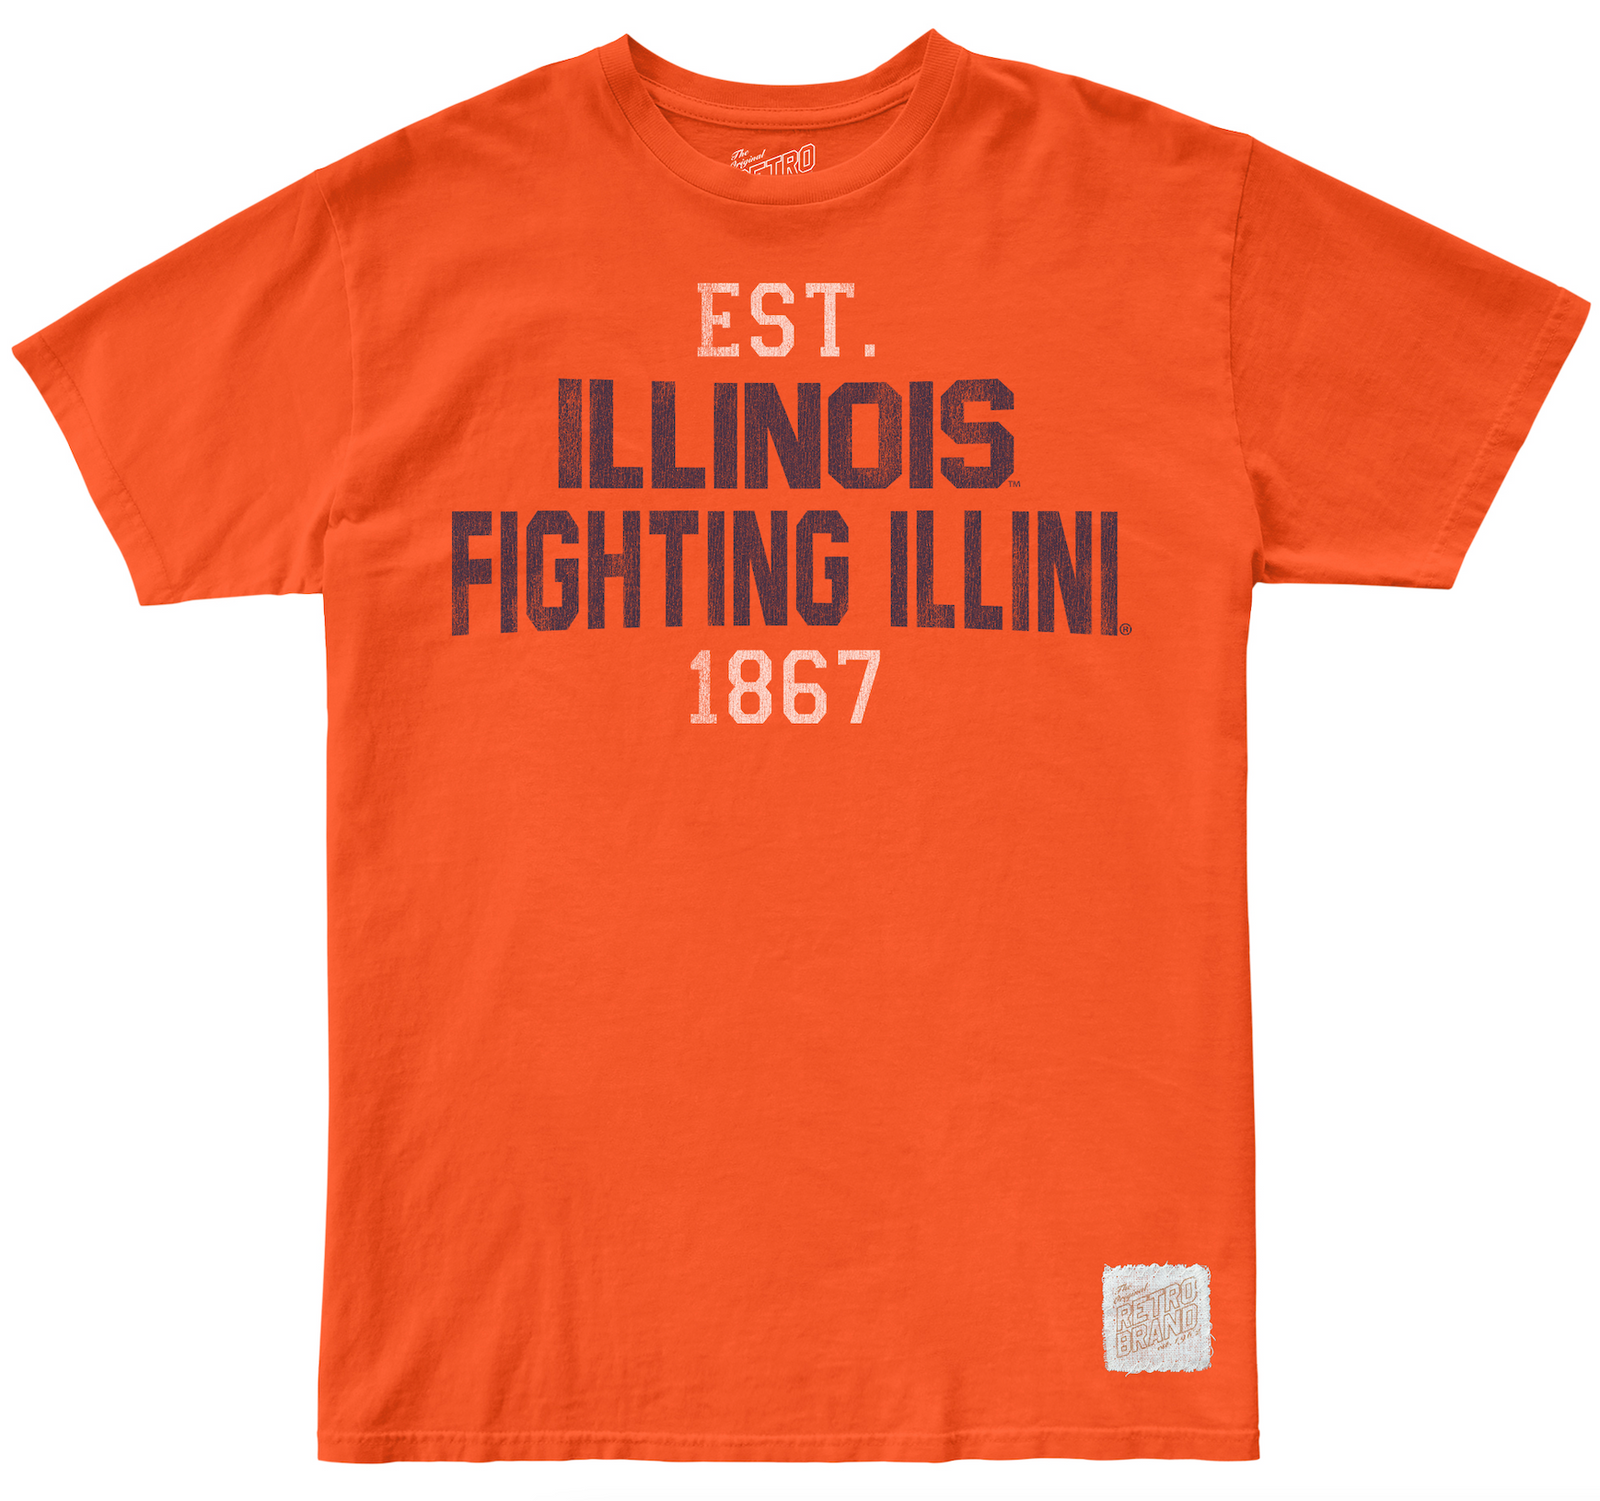 Illinois Fighting Illini 1867 100% Cotton Unisex Tee